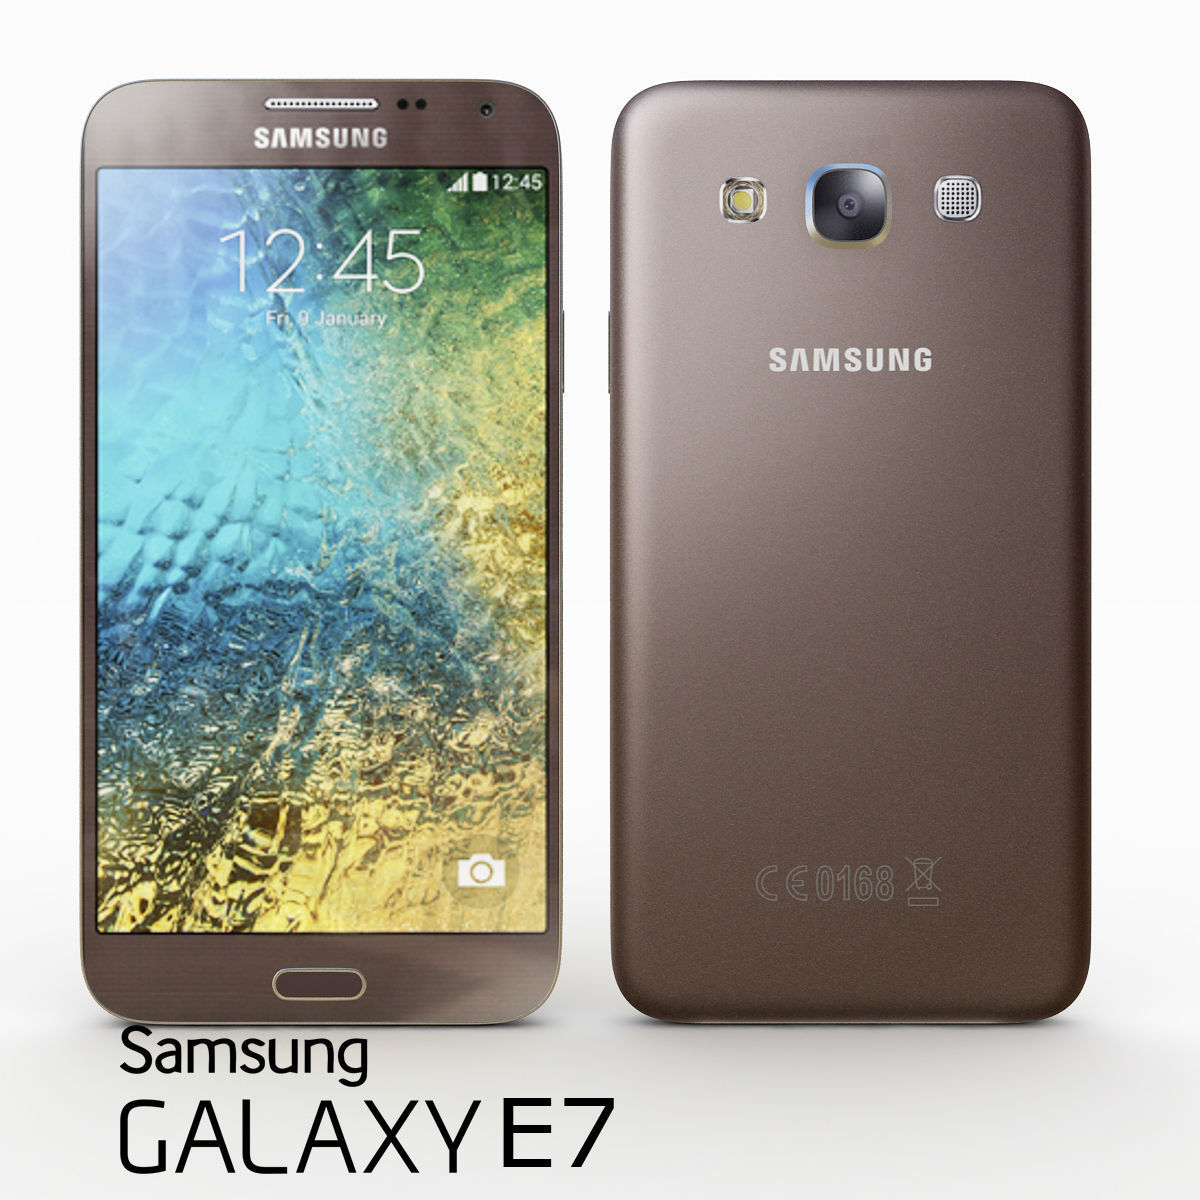 Samsung Galaxy E7 pictures, official photos